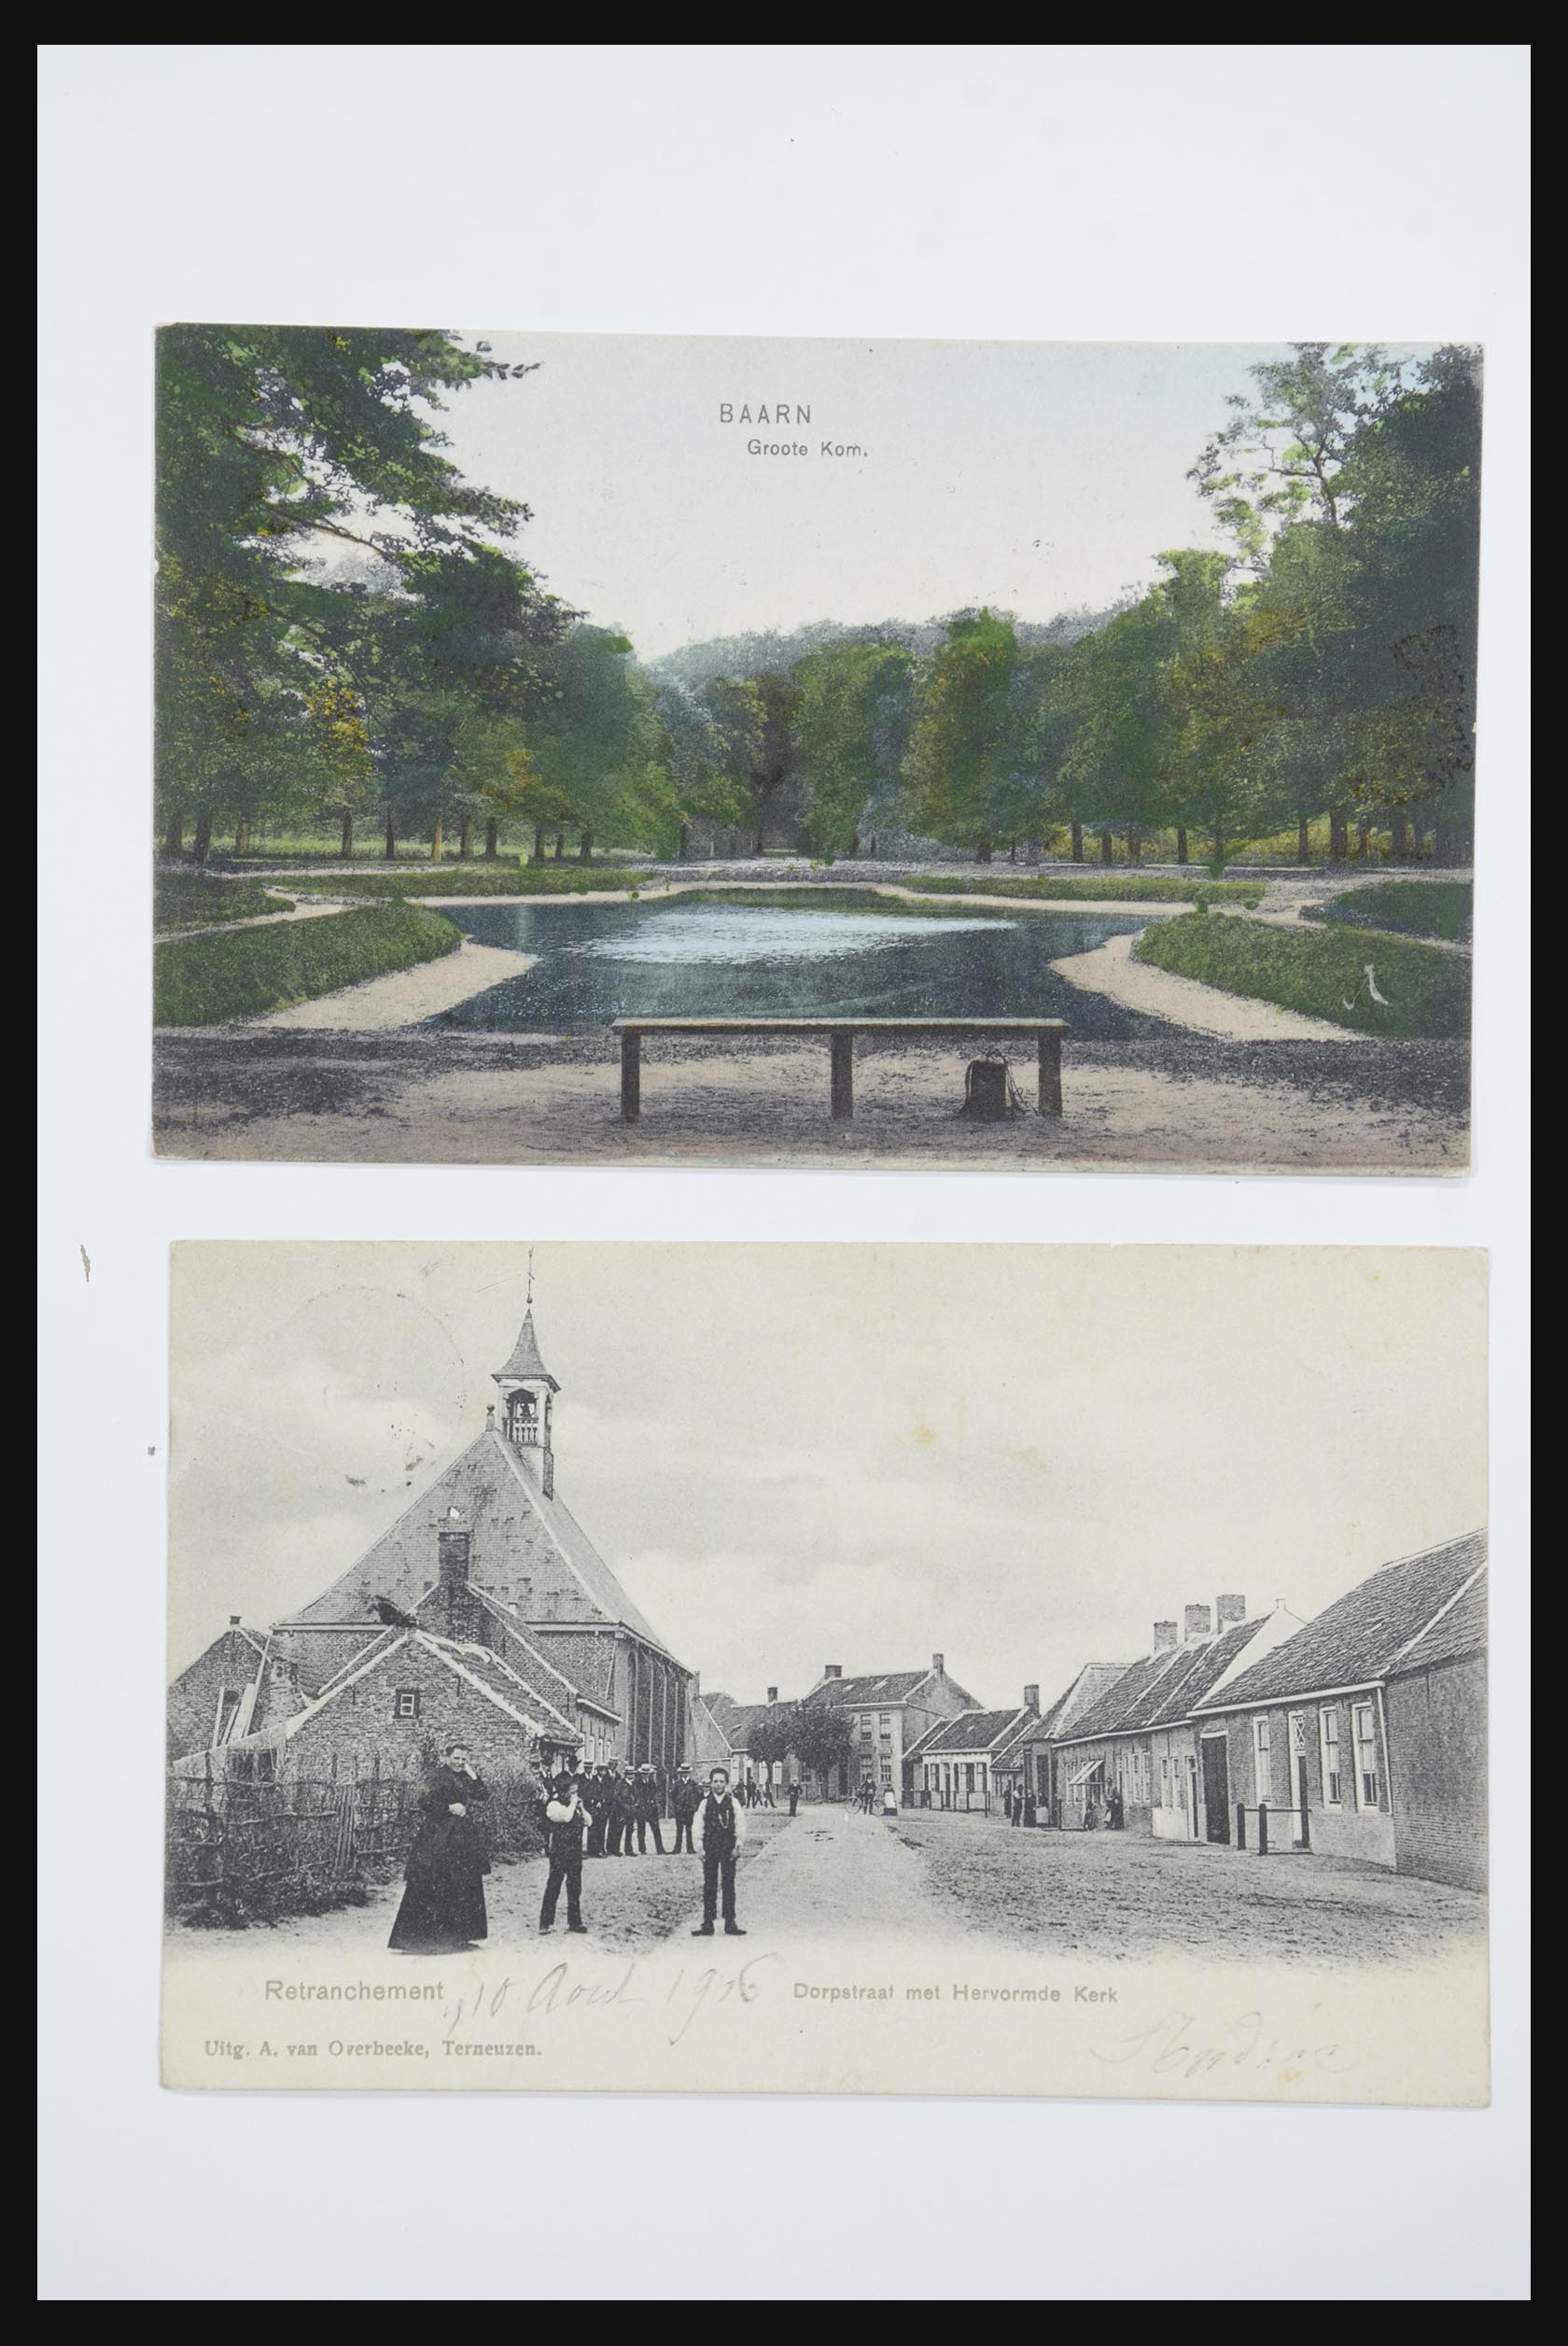 31668 060 - 31668 Nederland ansichtkaarten 1905-1935.